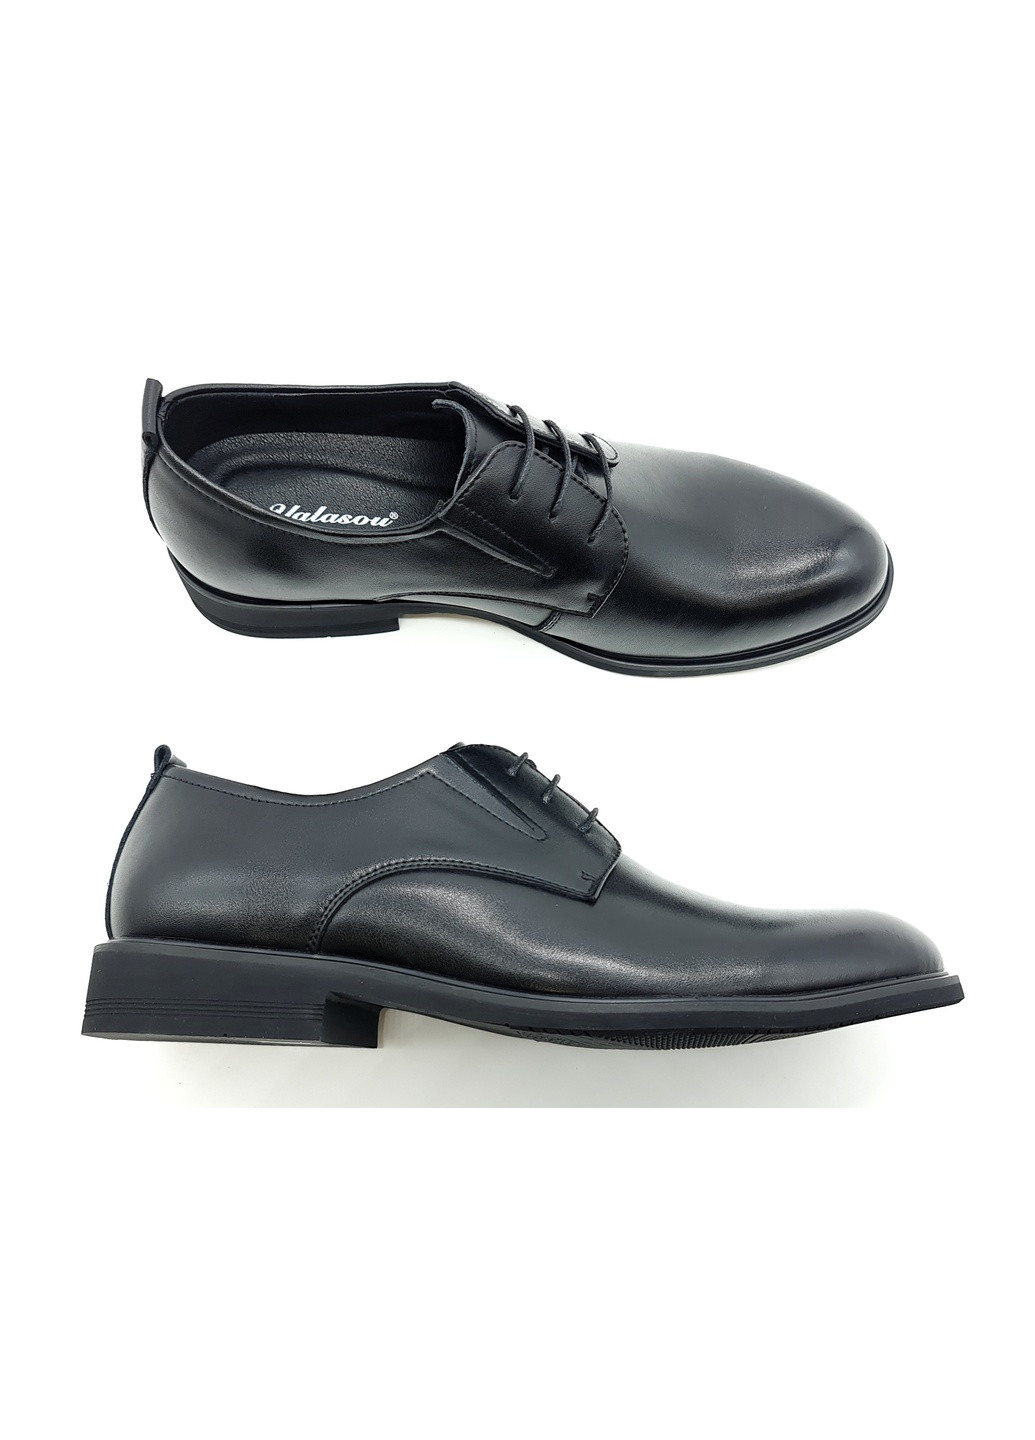 Мужские туфли черные кожаные YA-18-1 28 см(р) Yalasou